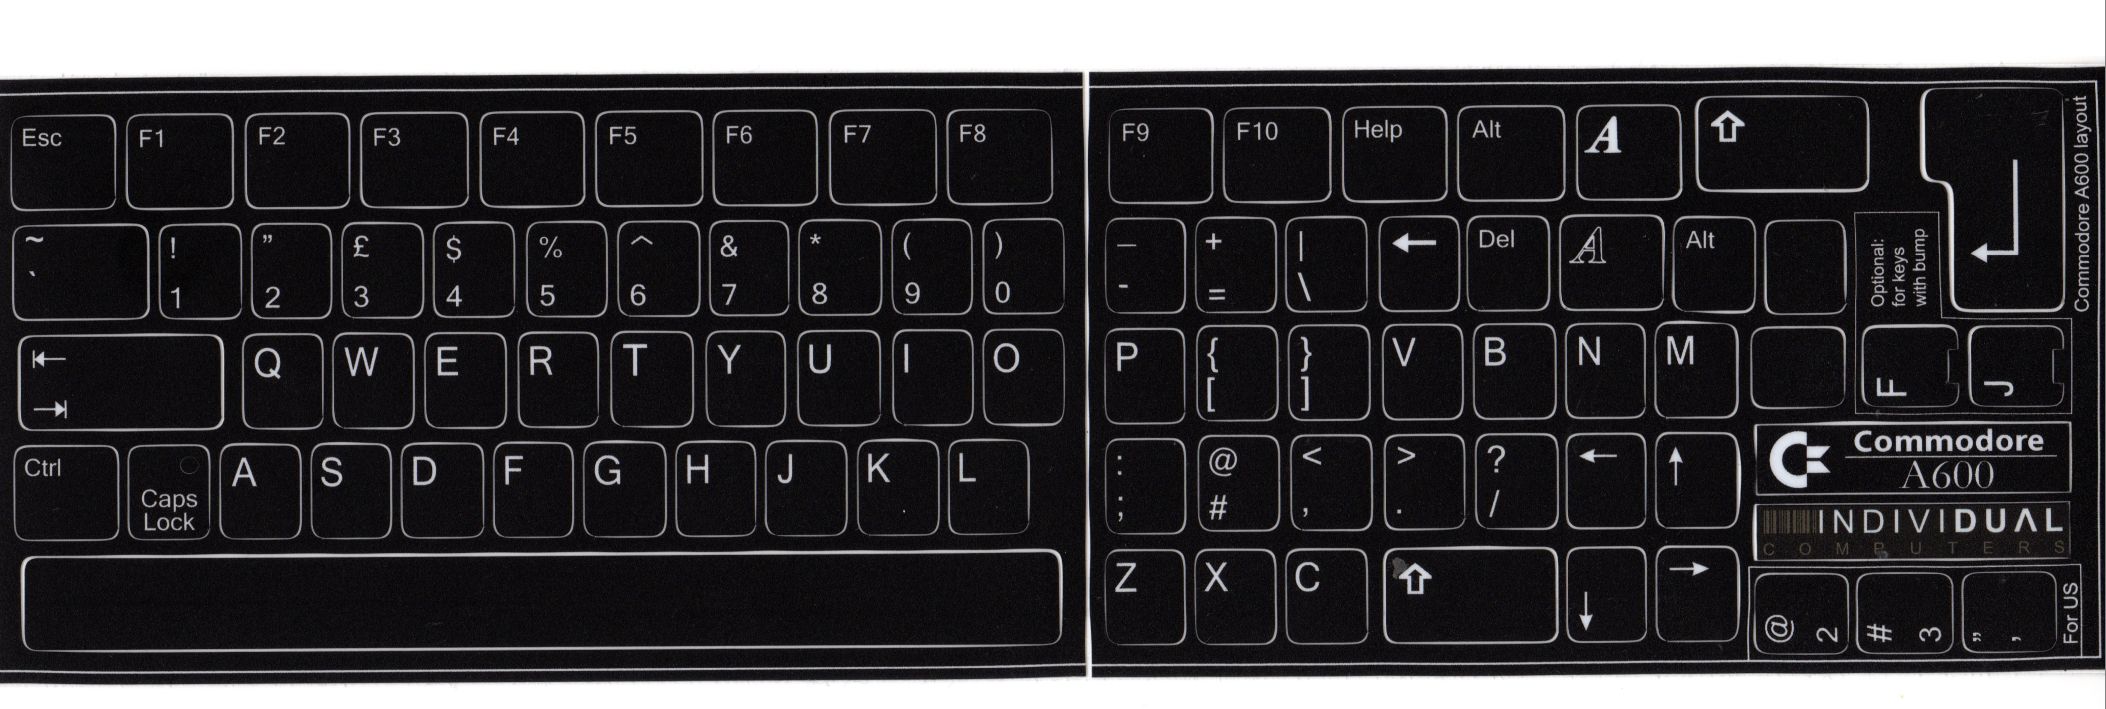 Pegatinas de teclado, versión en inglés, estilo A600